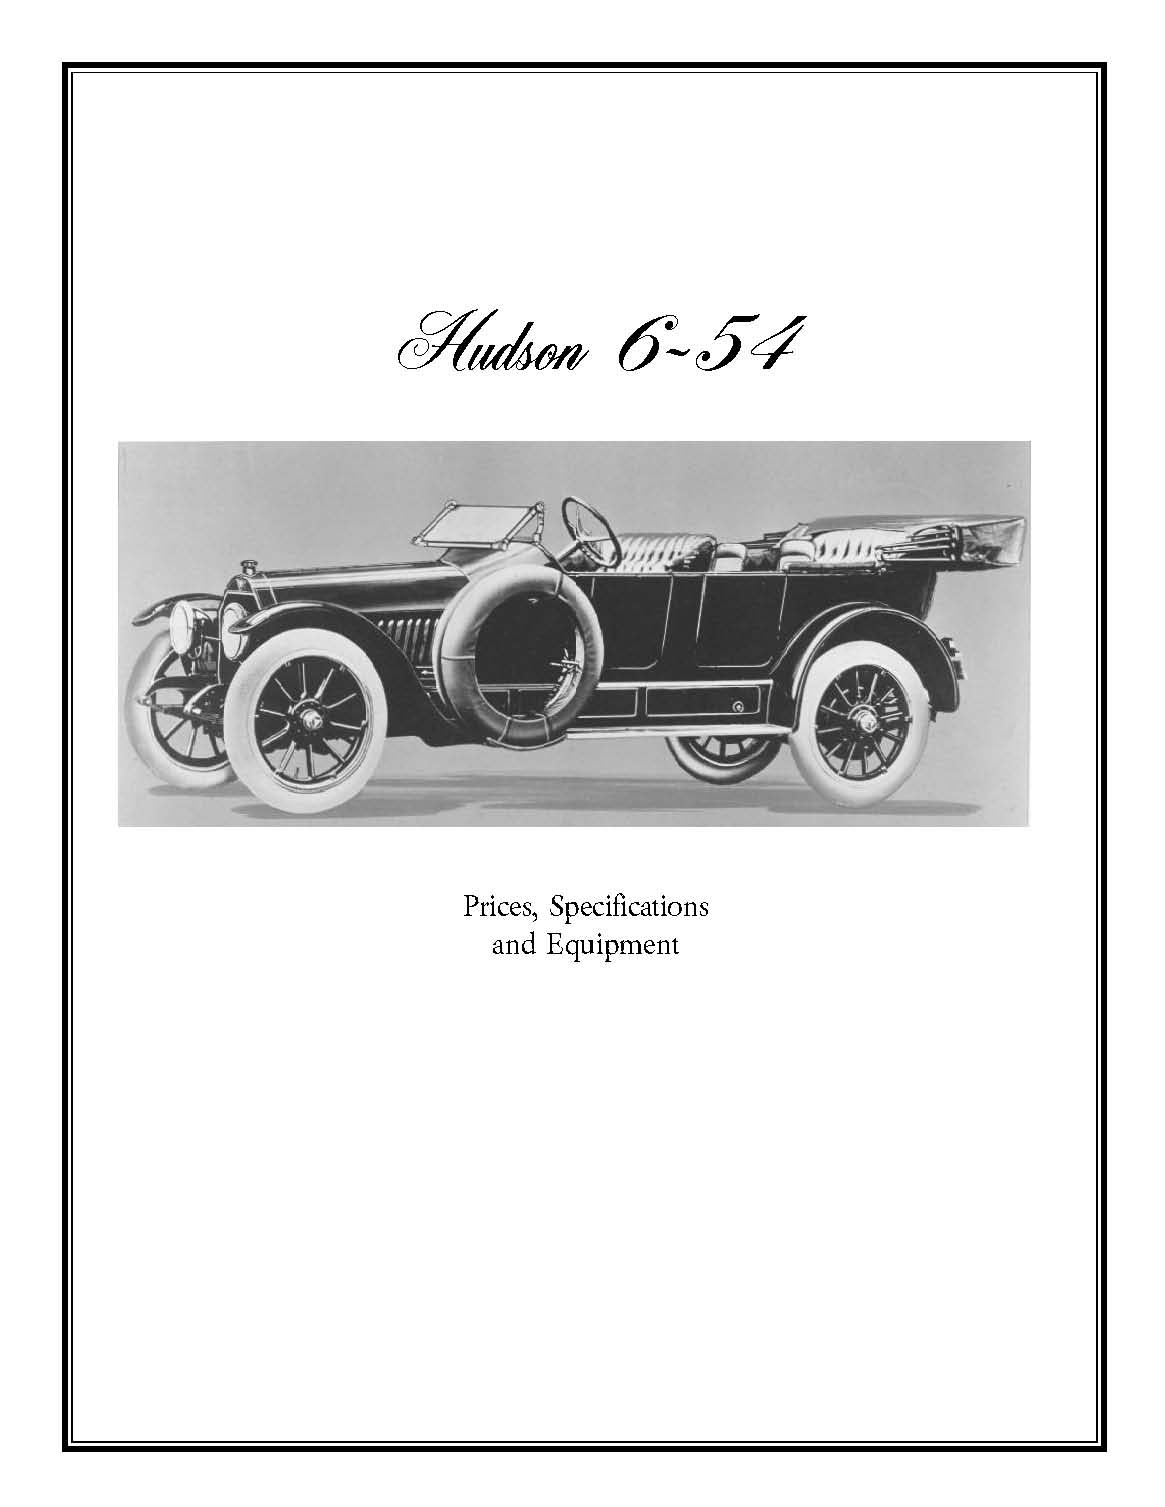 1915 Hudson Six-54 Information Booklet